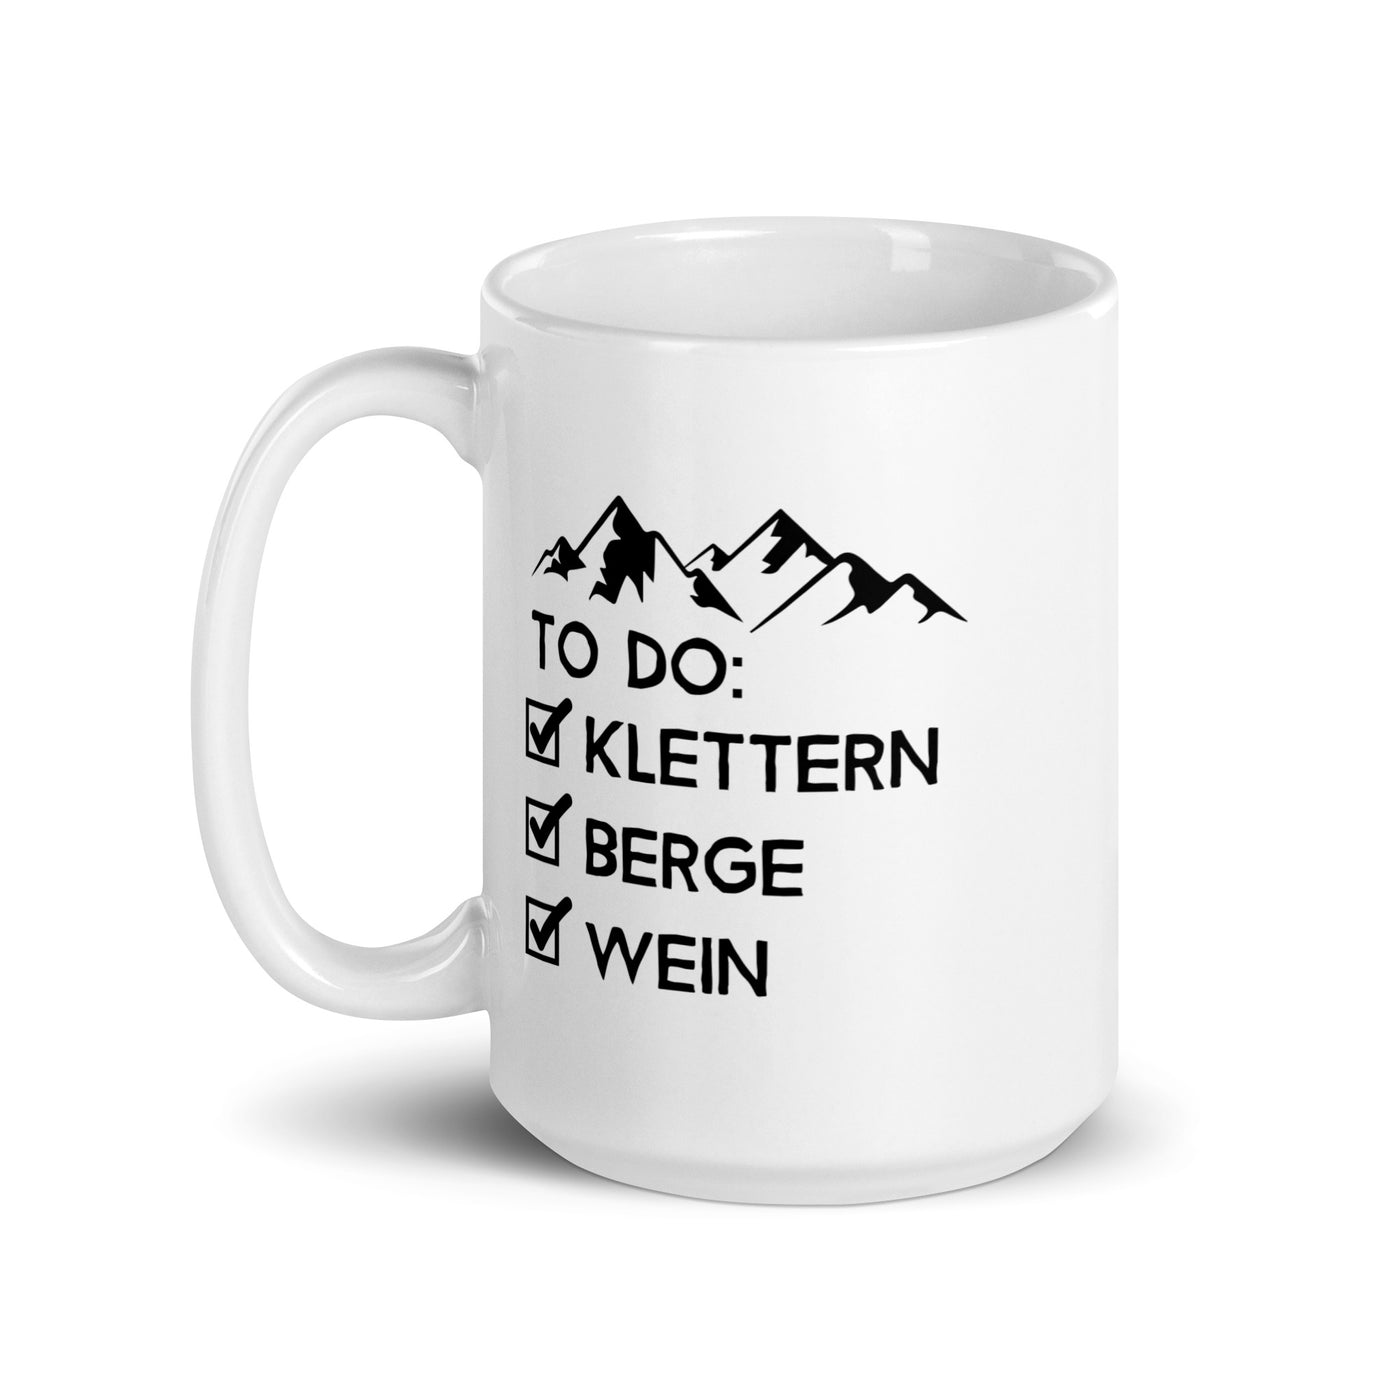 To Do Liste - Klettern, Berge, Wein - Tasse klettern